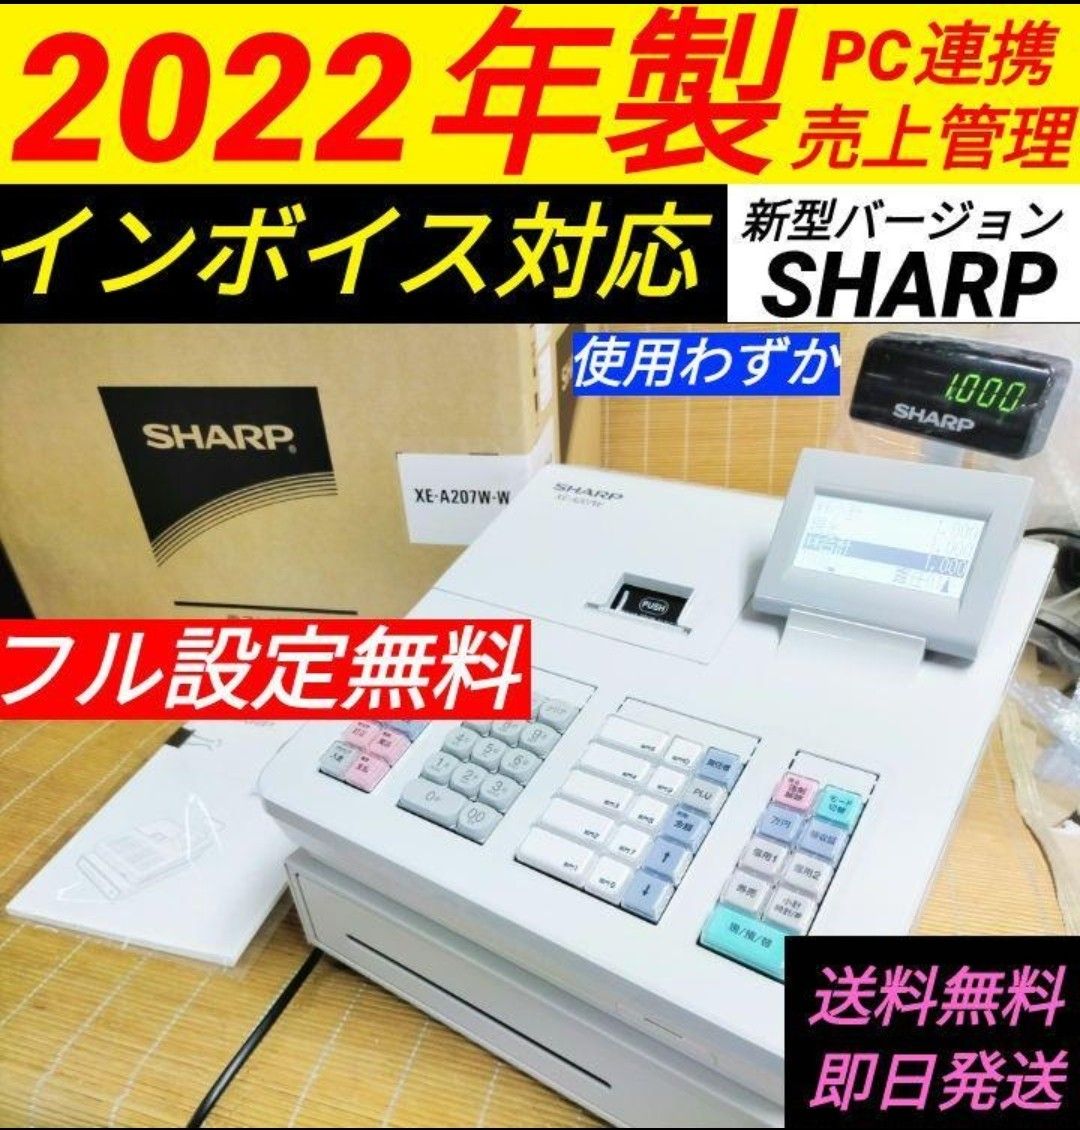 SHARP レジスター XE-A207 設定無料PC連携 9104-